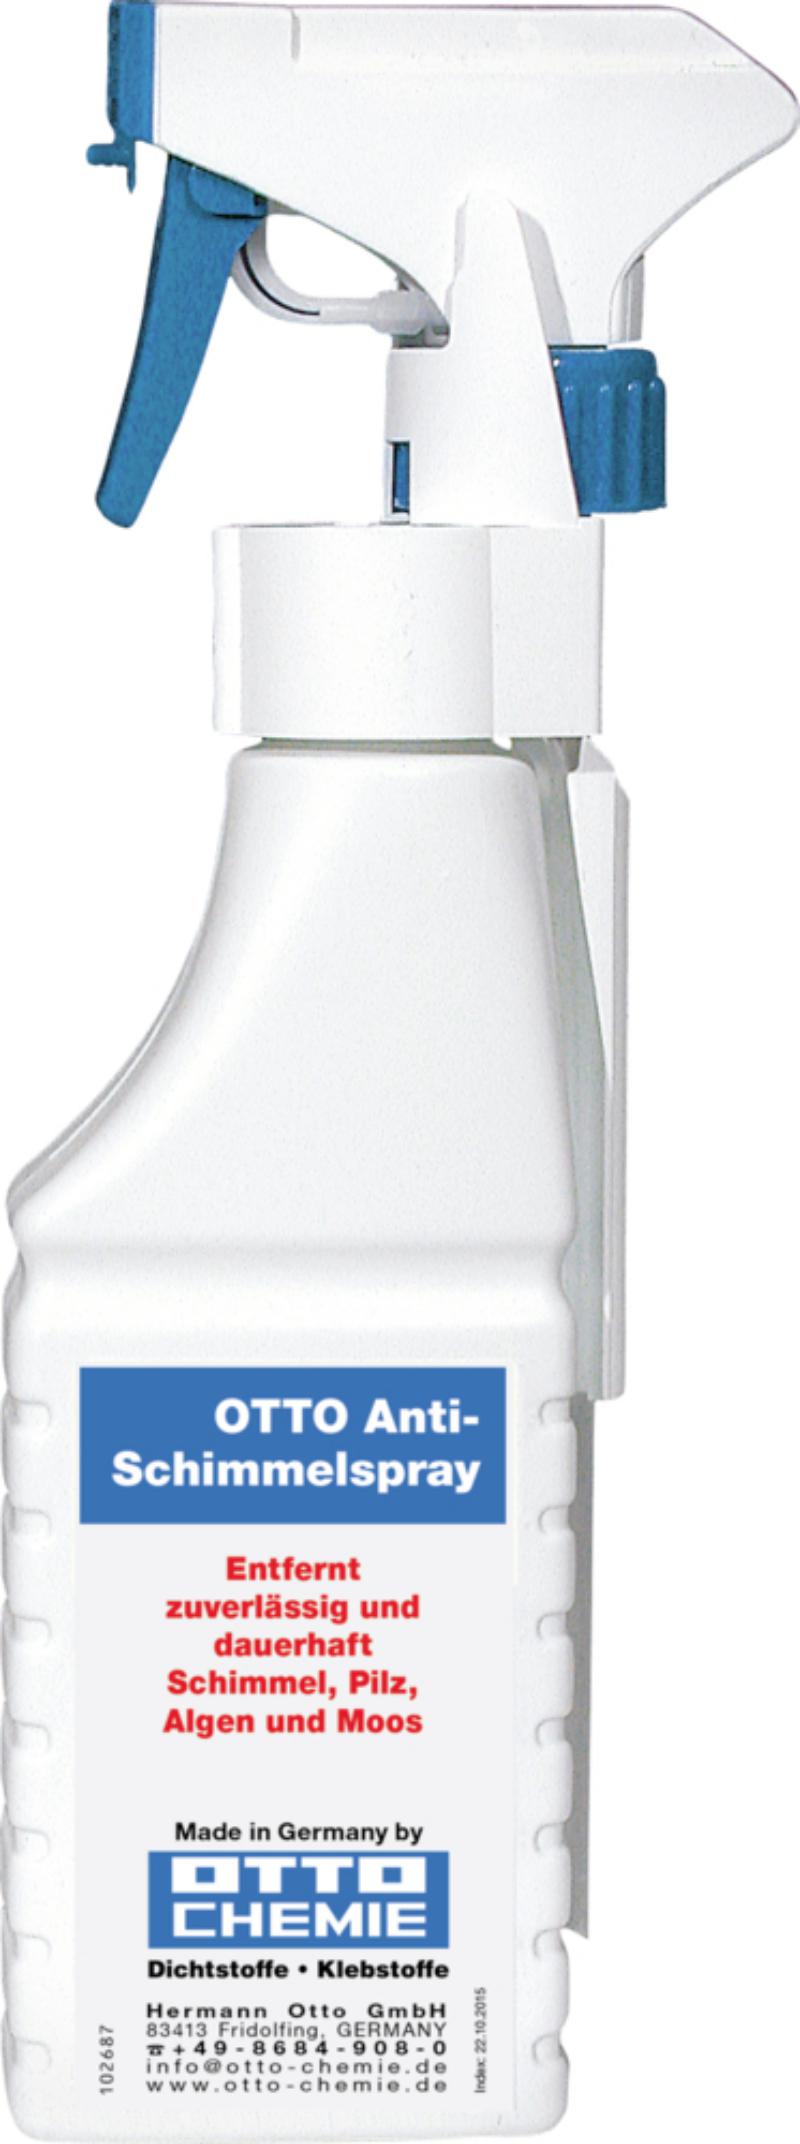 Otto Anti Schimmelspray D - 500 ml Flasche (4030574017148)